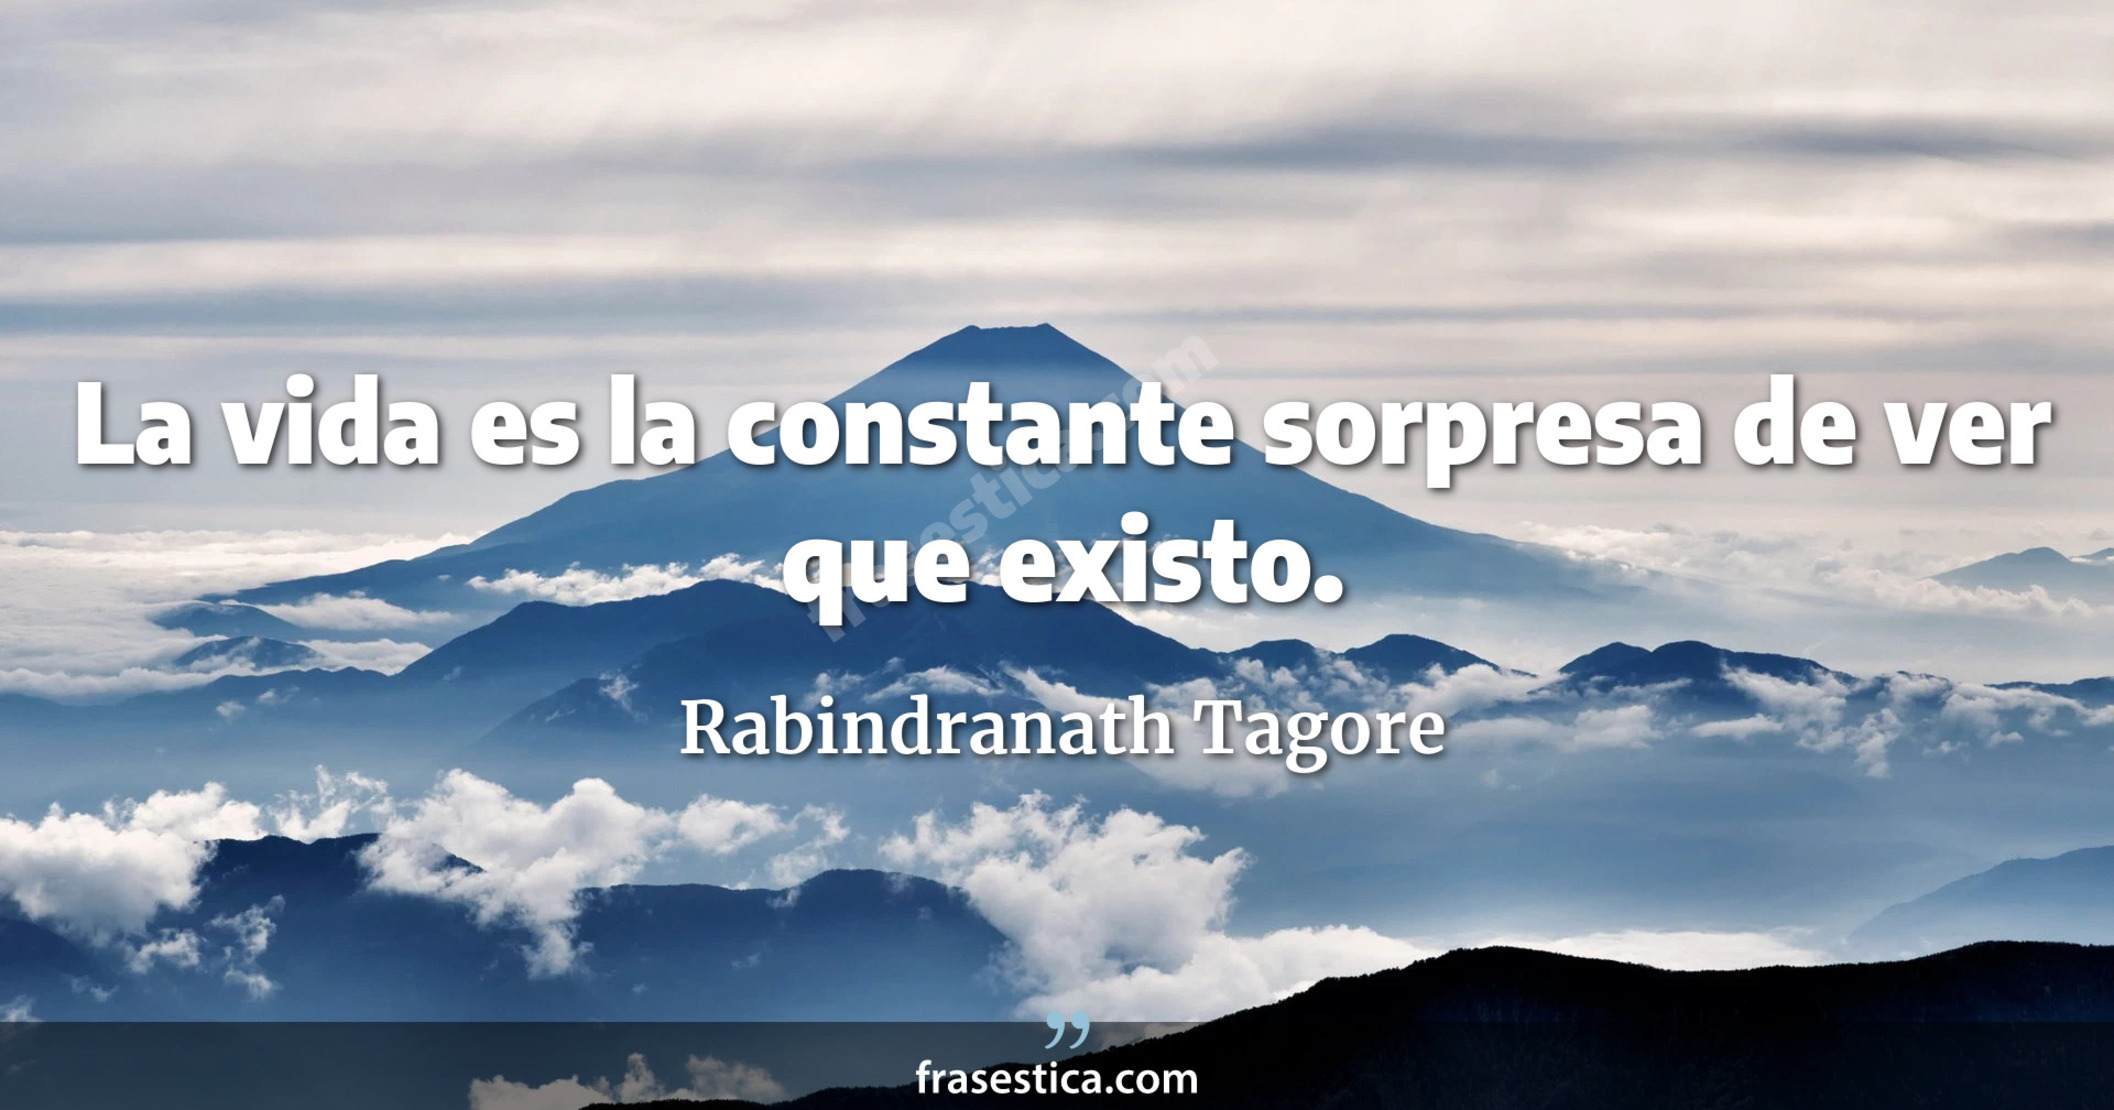 La vida es la constante sorpresa de ver que existo. - Rabindranath Tagore